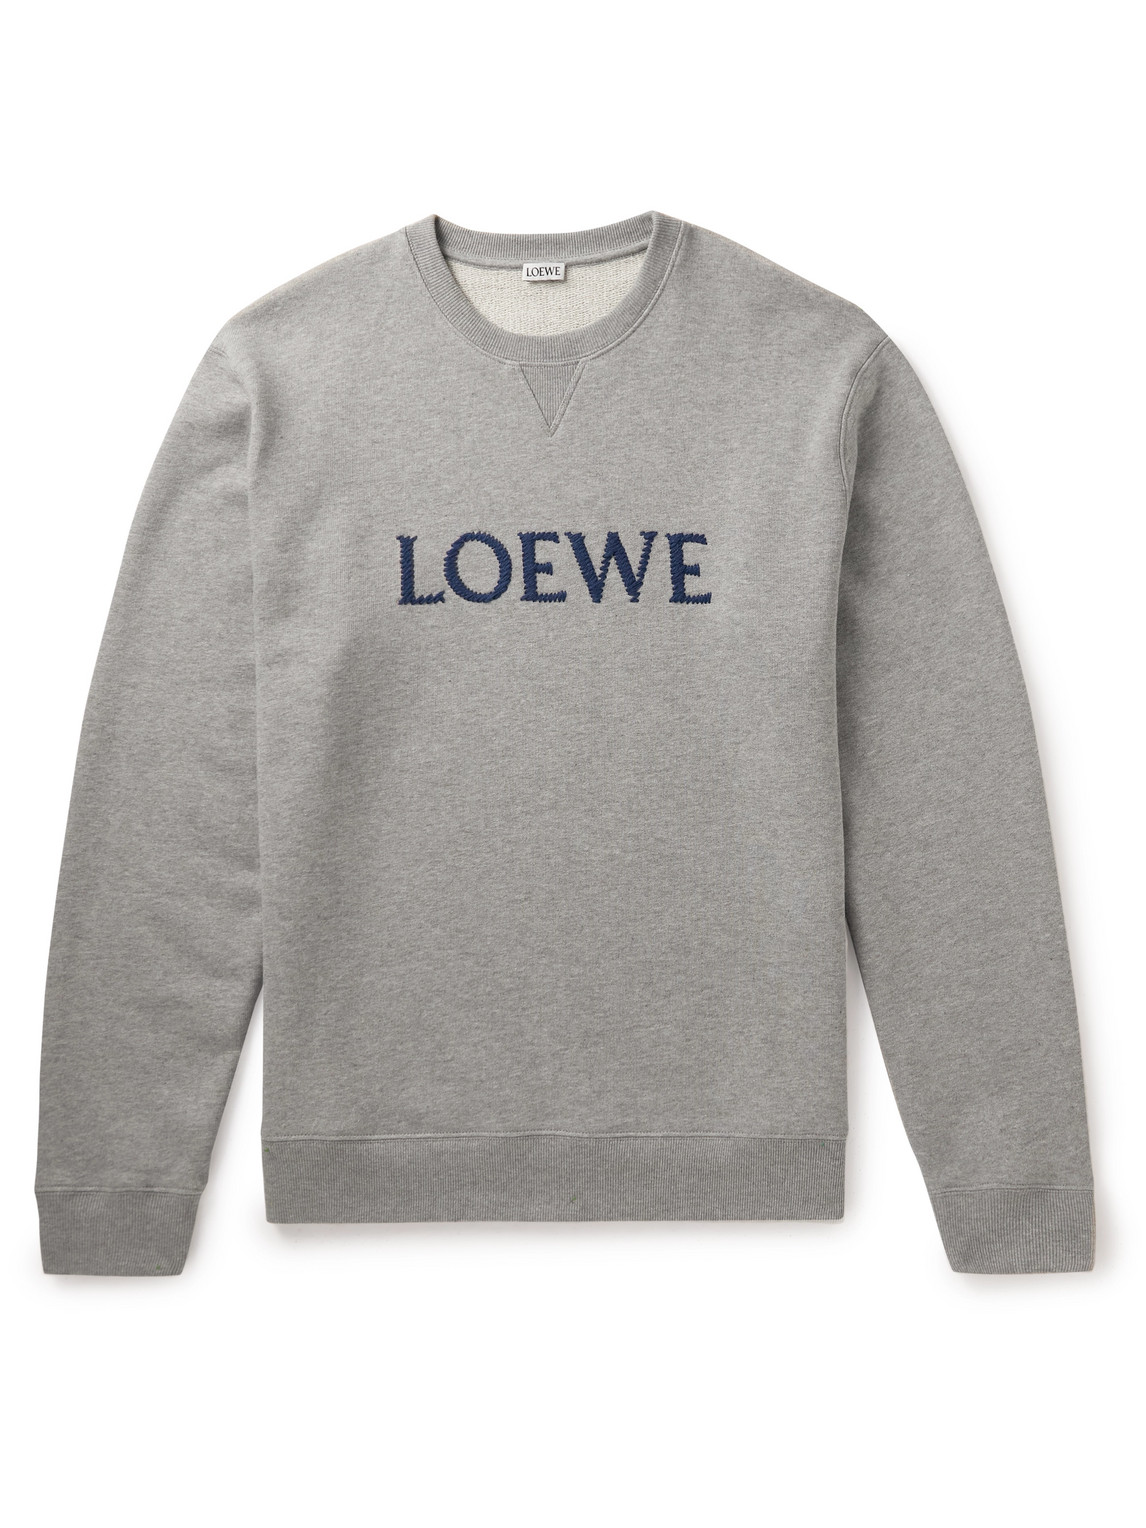 LOEWE - Logo-Embroidered Cotton-Jersey Sweatshirt - Men - Gray - XXXL von LOEWE